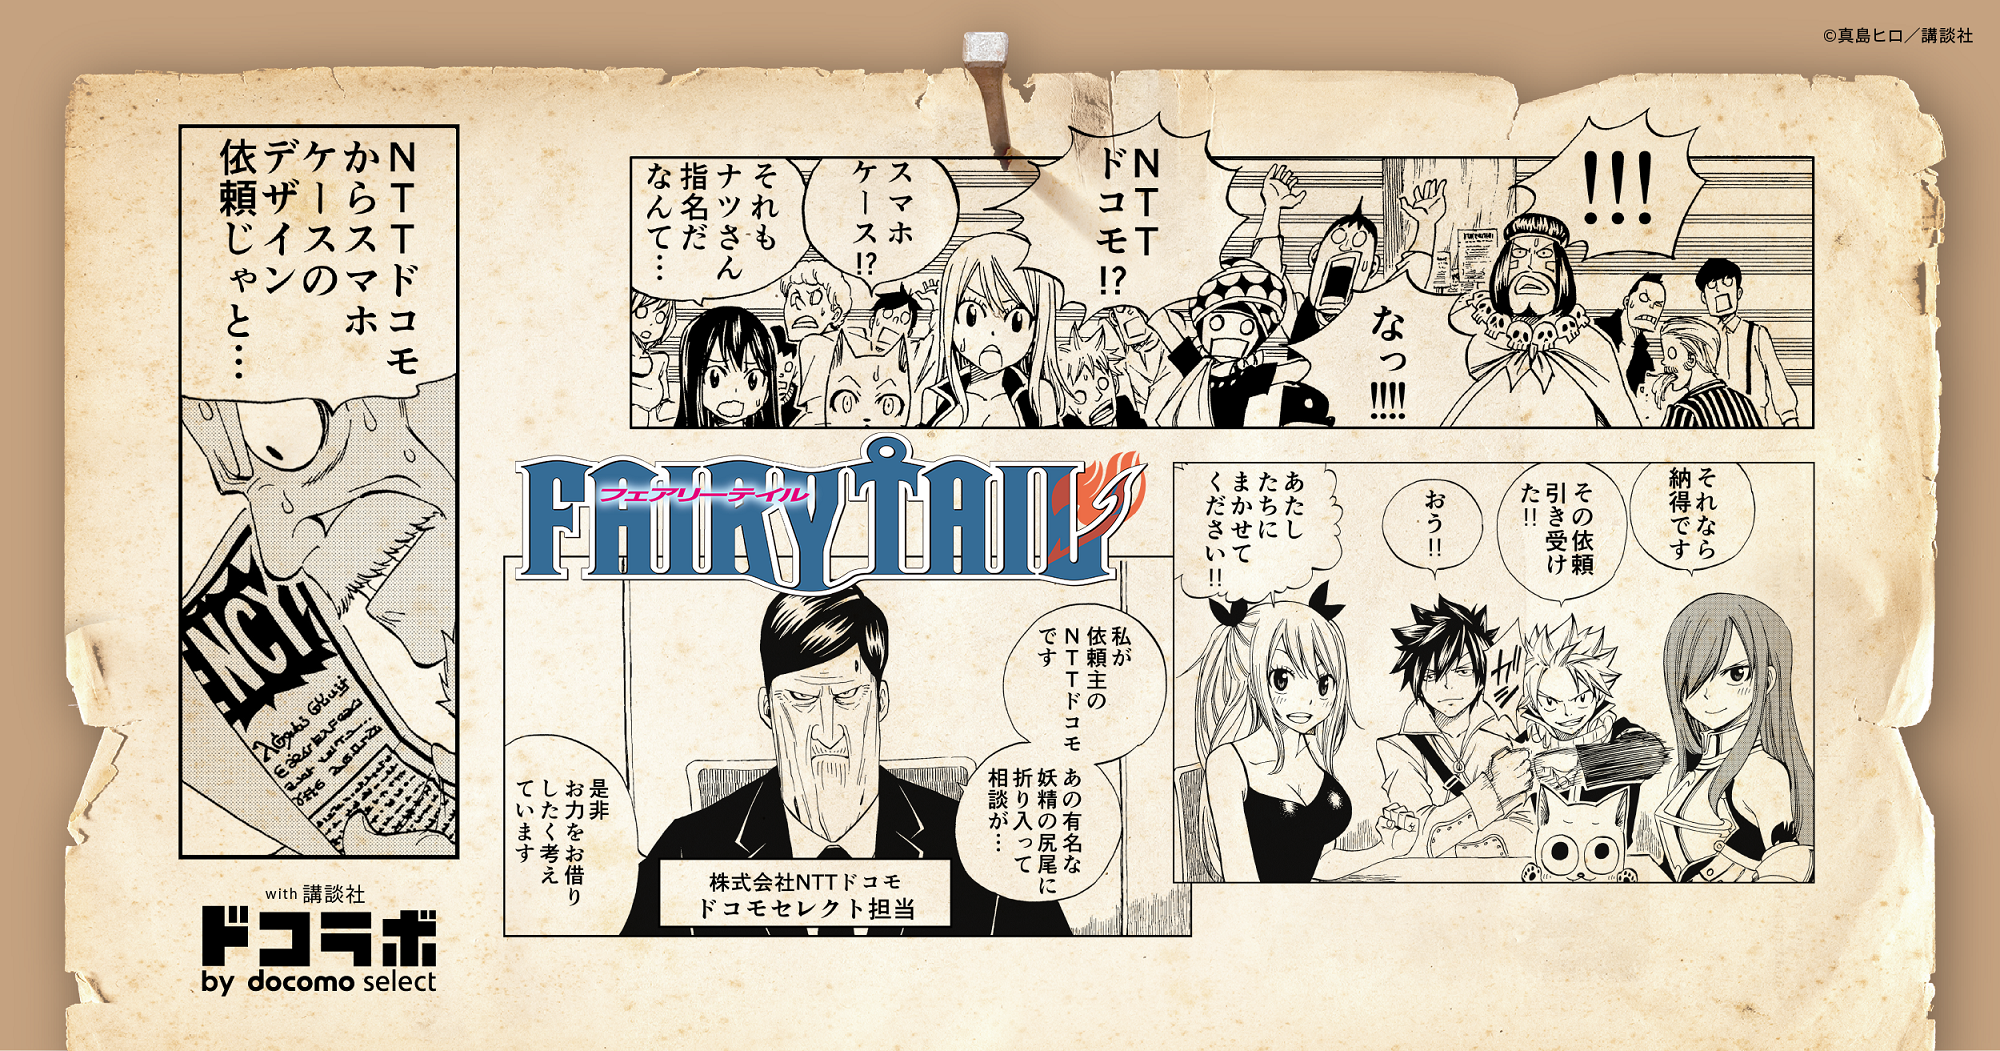 Fairy Tail 七つの大罪 進撃の巨人 転生したらスライムだった件 ド級のスマホケースを開発するウェブキャンペーン ドコラボ By Docomo Select 始動 ドコラボpr事務局のプレスリリース